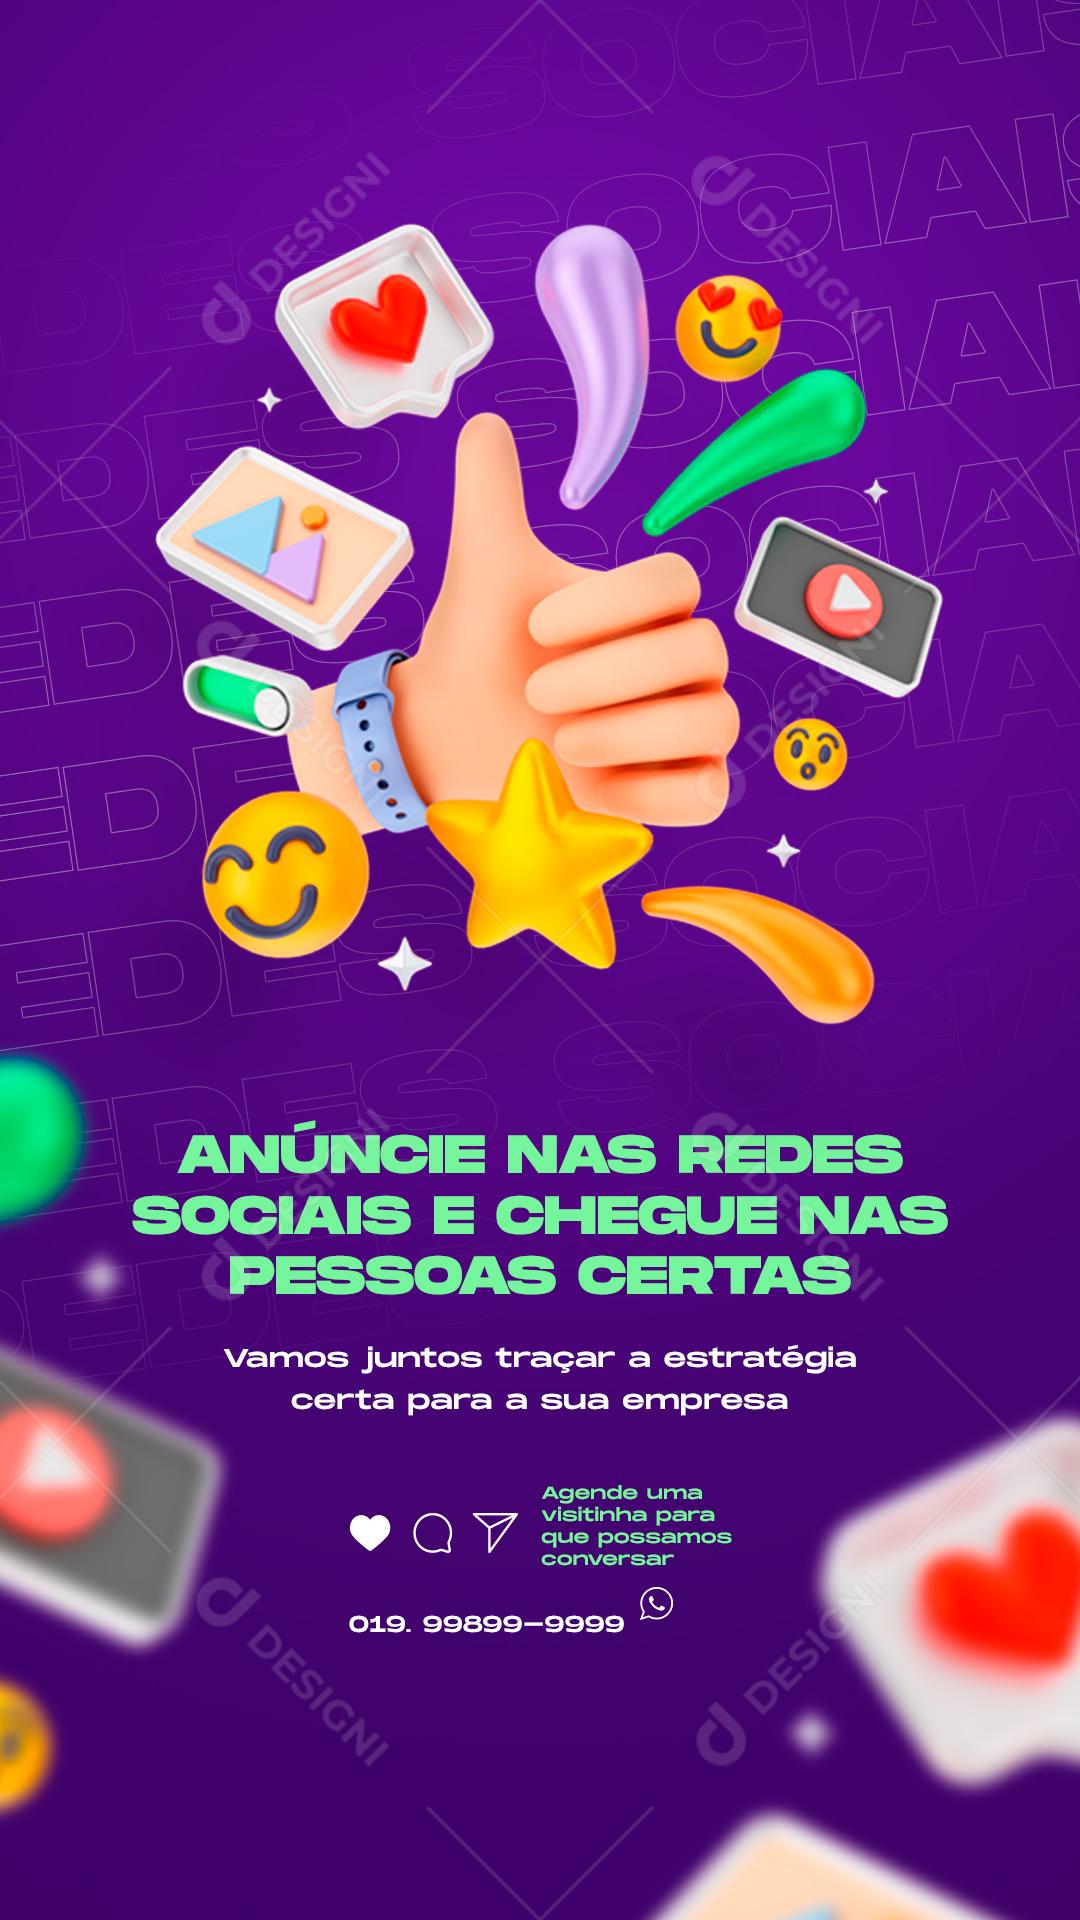 Story Anúncie Nas Redes Sociais E Chegue Nas Pessoas Marketing Social 8221